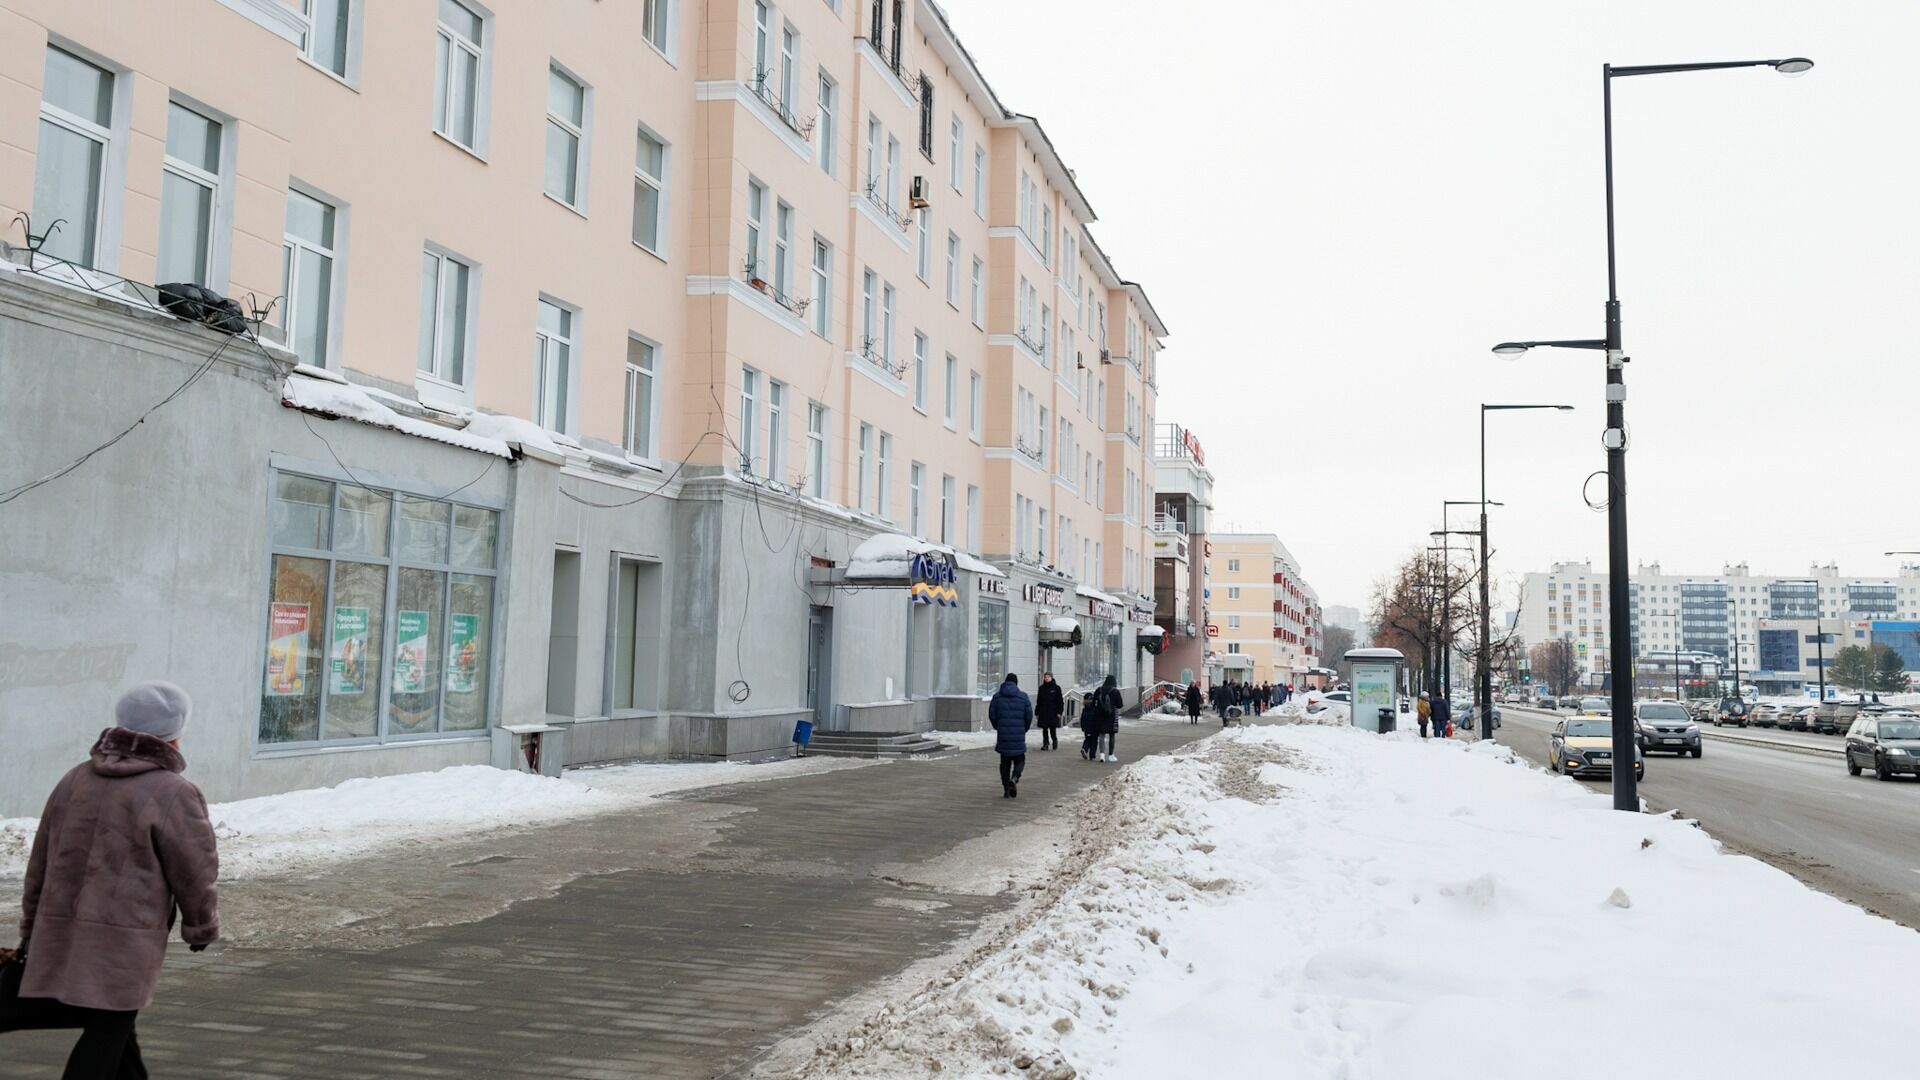 Неизвестные напали на юношу в юбке в Екатеринбурге